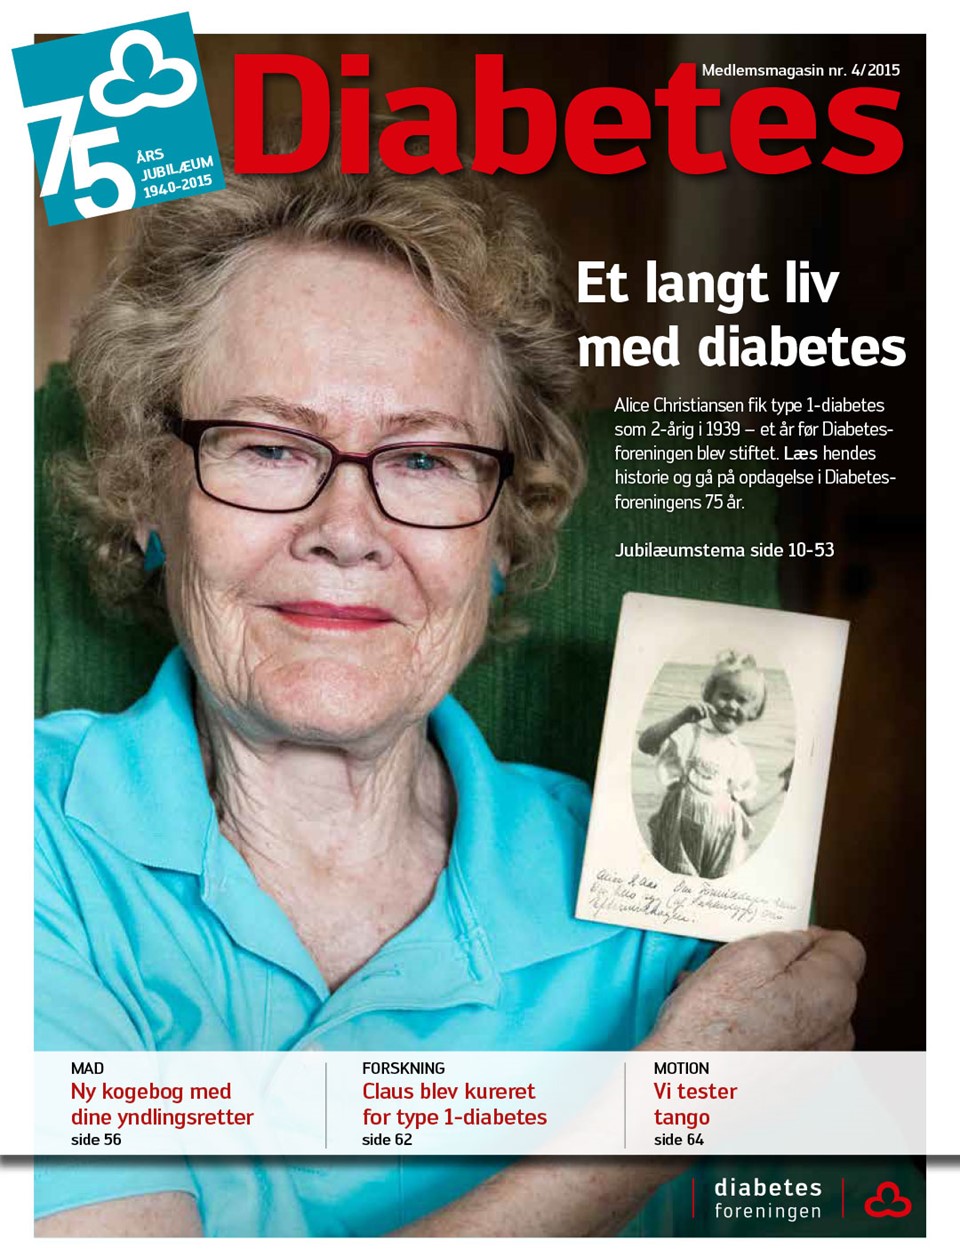  Forside af magasinet Diabetes november 2015